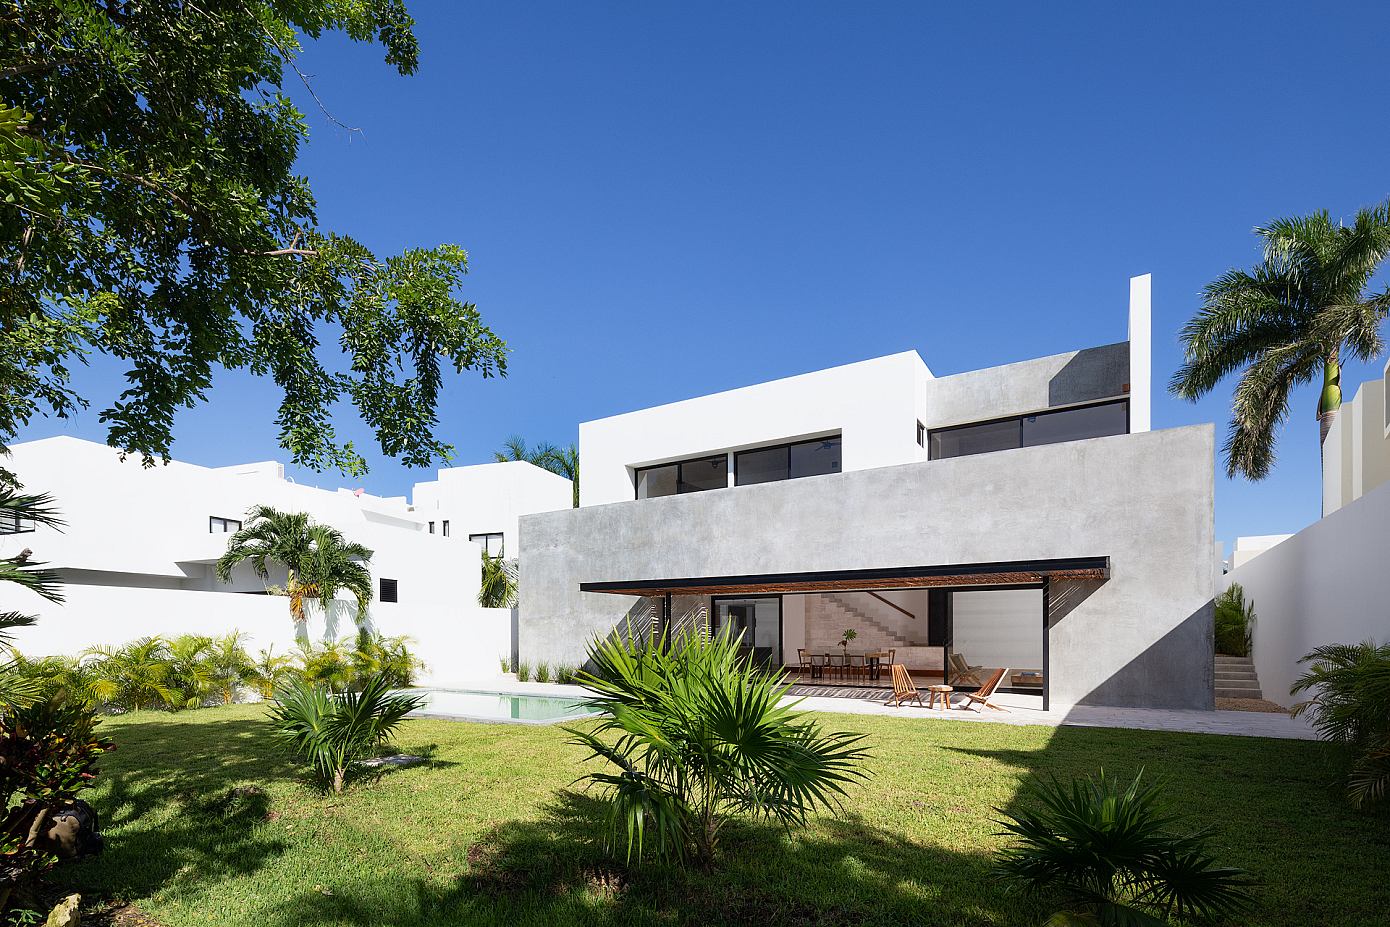 Casa Pelicanos by Estudio AM Arquitectos